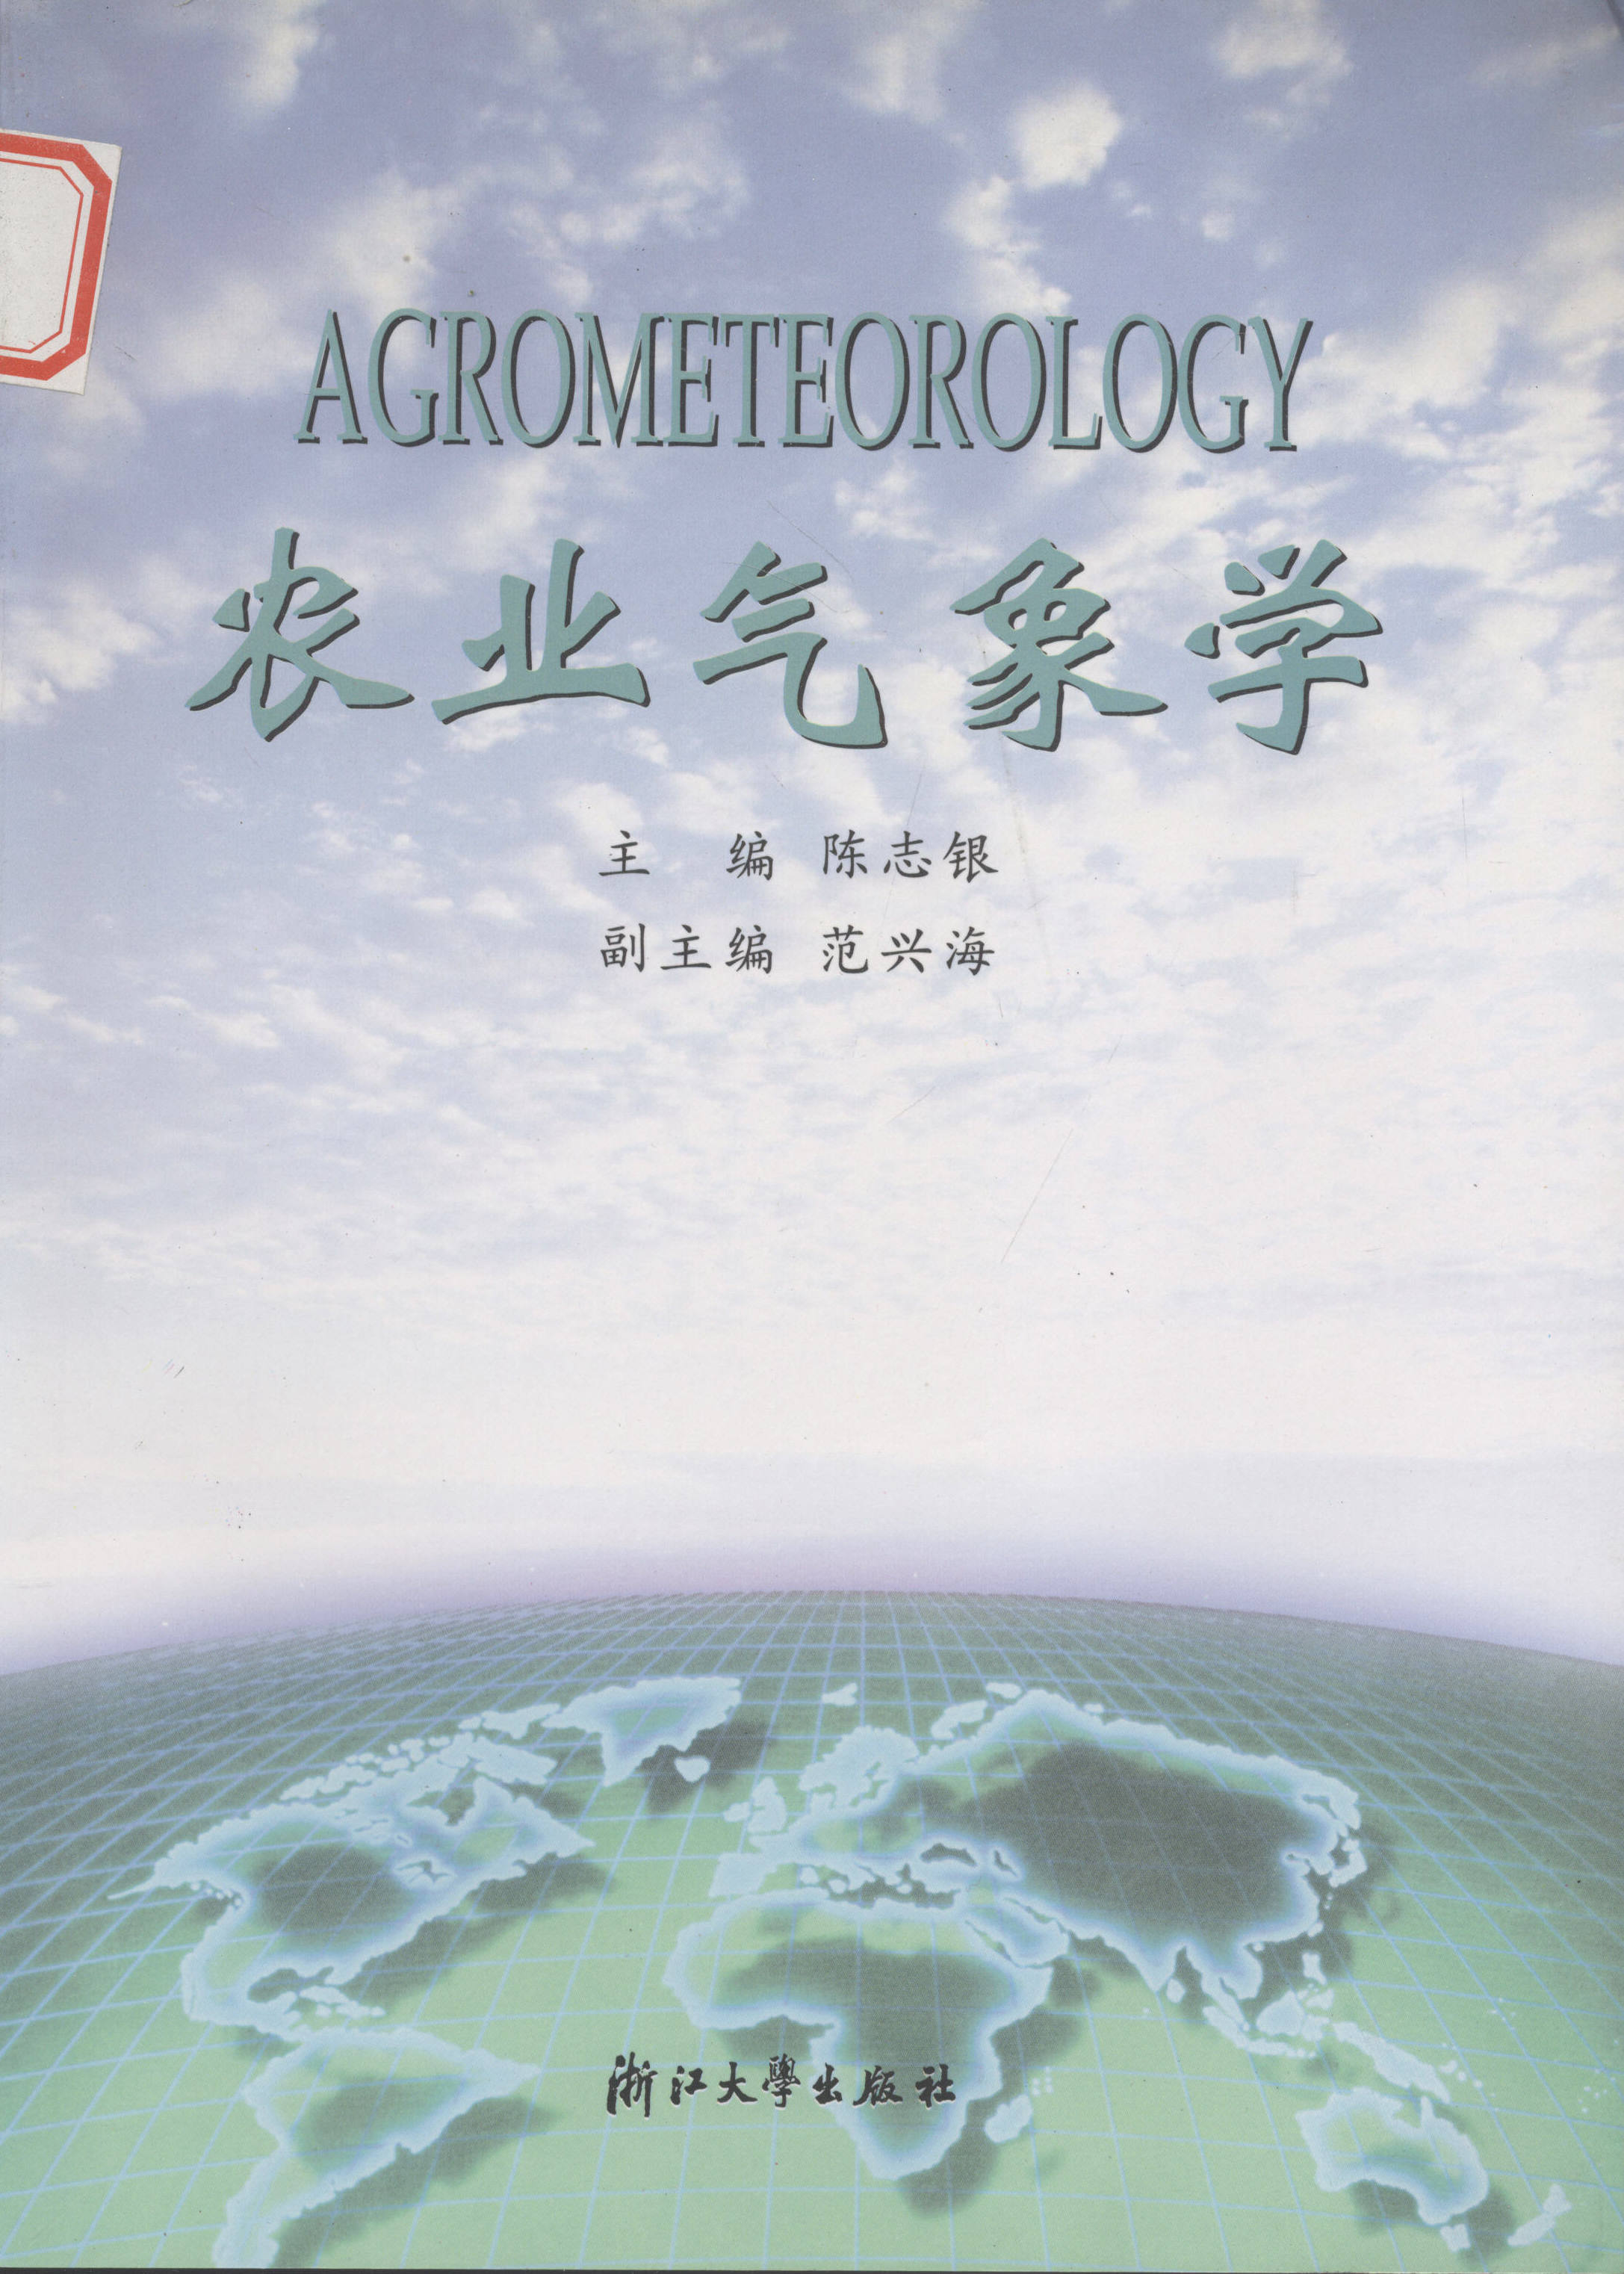 農業氣象學(浙江大學出版社出版圖書)